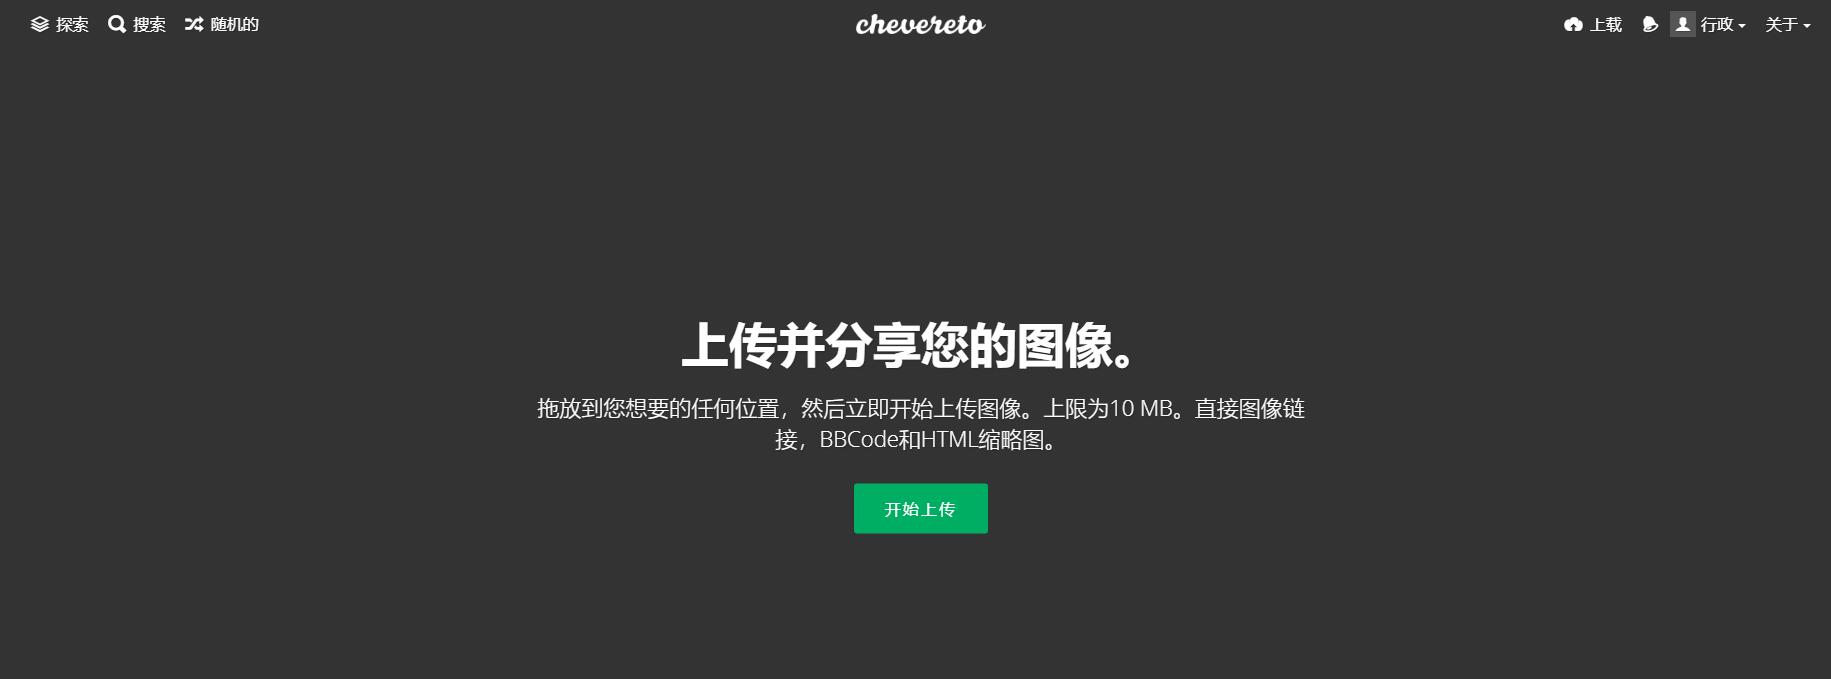 Chevereto 3.10.16图床程序去后门免授权版免费图像托管服务系统源码免费图床工具源码插图